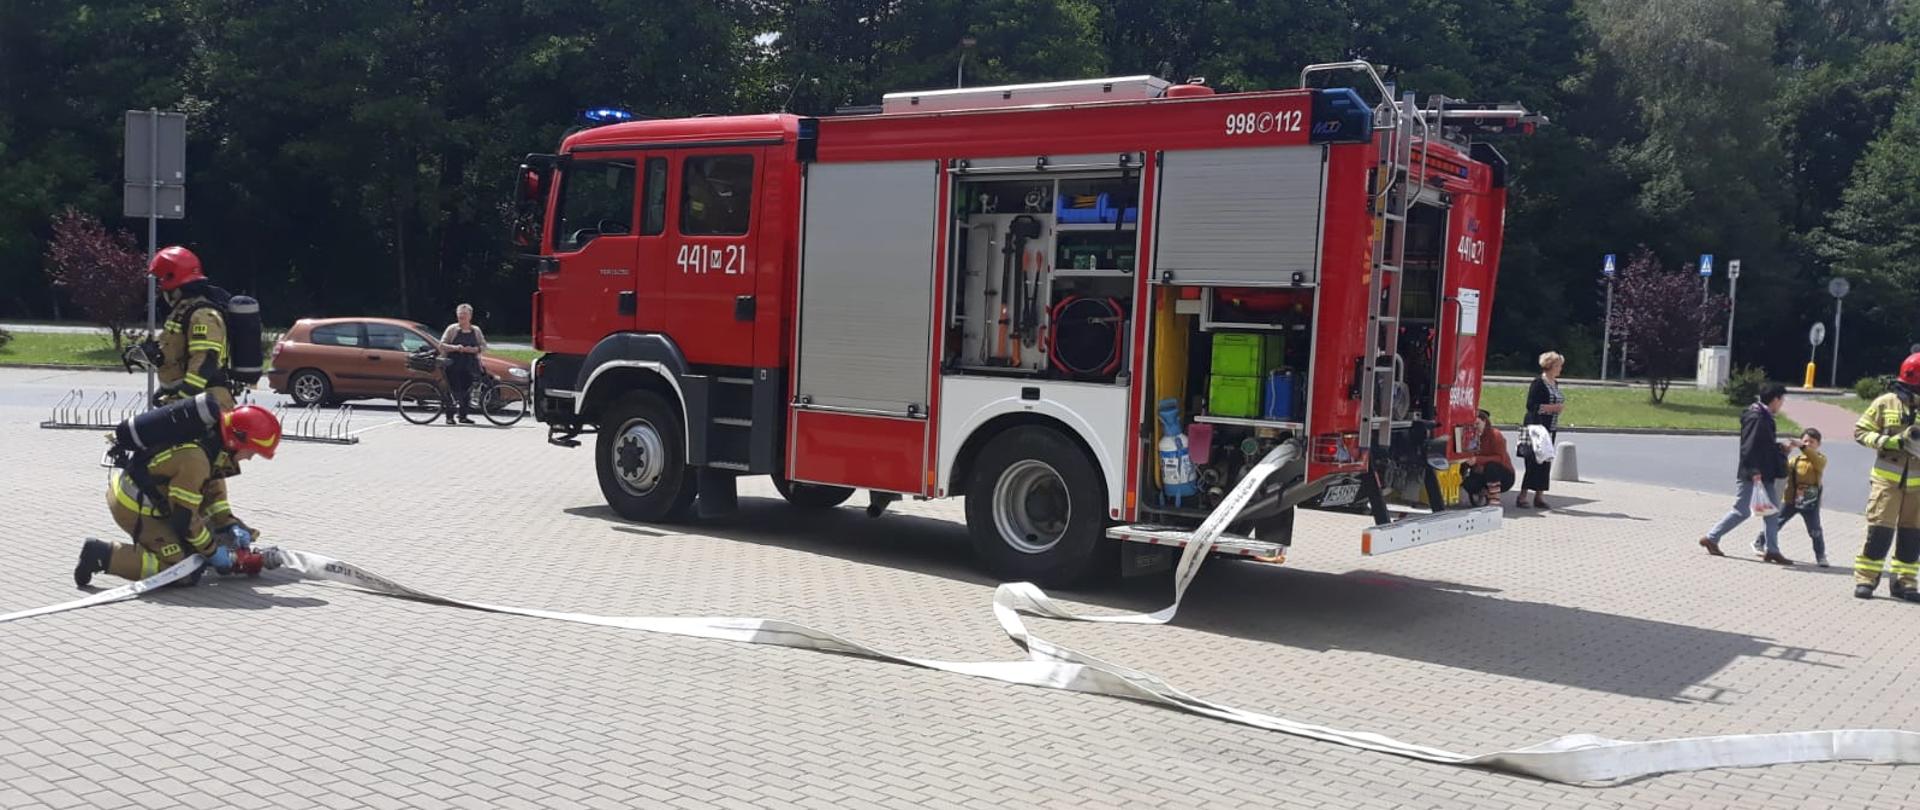 Strażacy rozwijają linię gaśniczą z węży pożarniczych która podłączona jest do samochodu pożarniczego. 